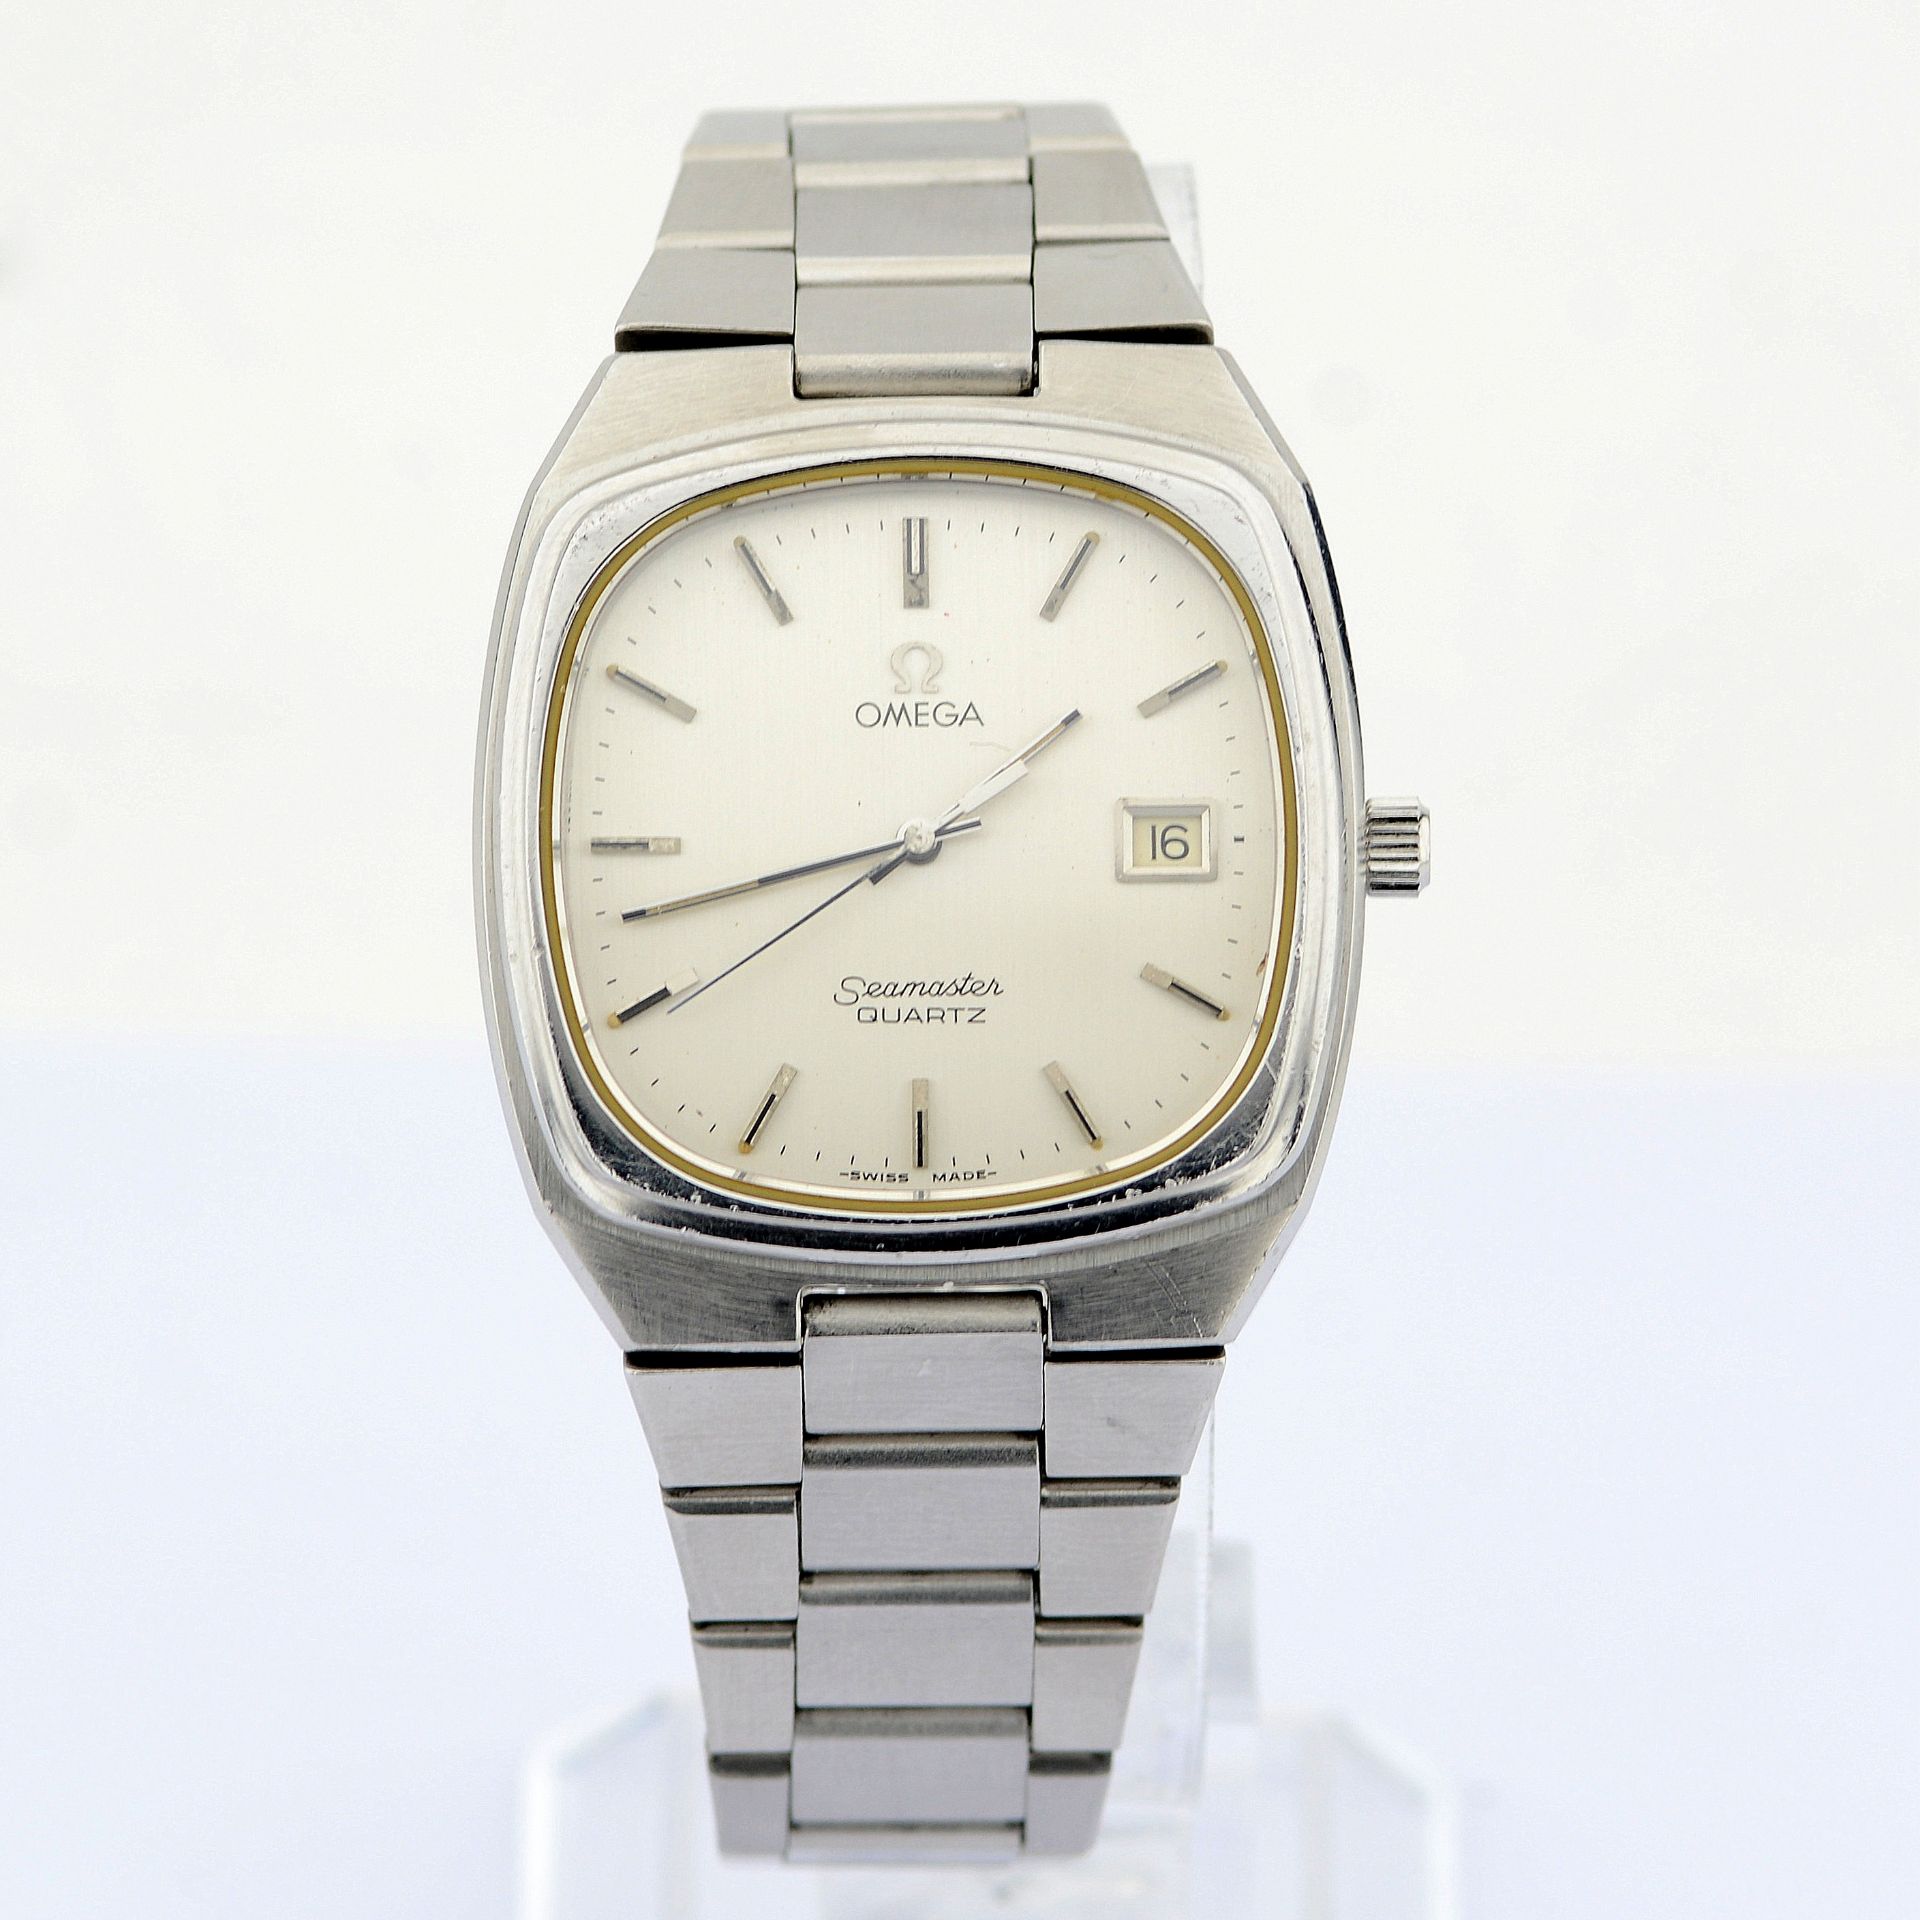 Omega / Seamaster Date 35 mm - Gentlmen's Steel Wrist Watch - Image 7 of 7